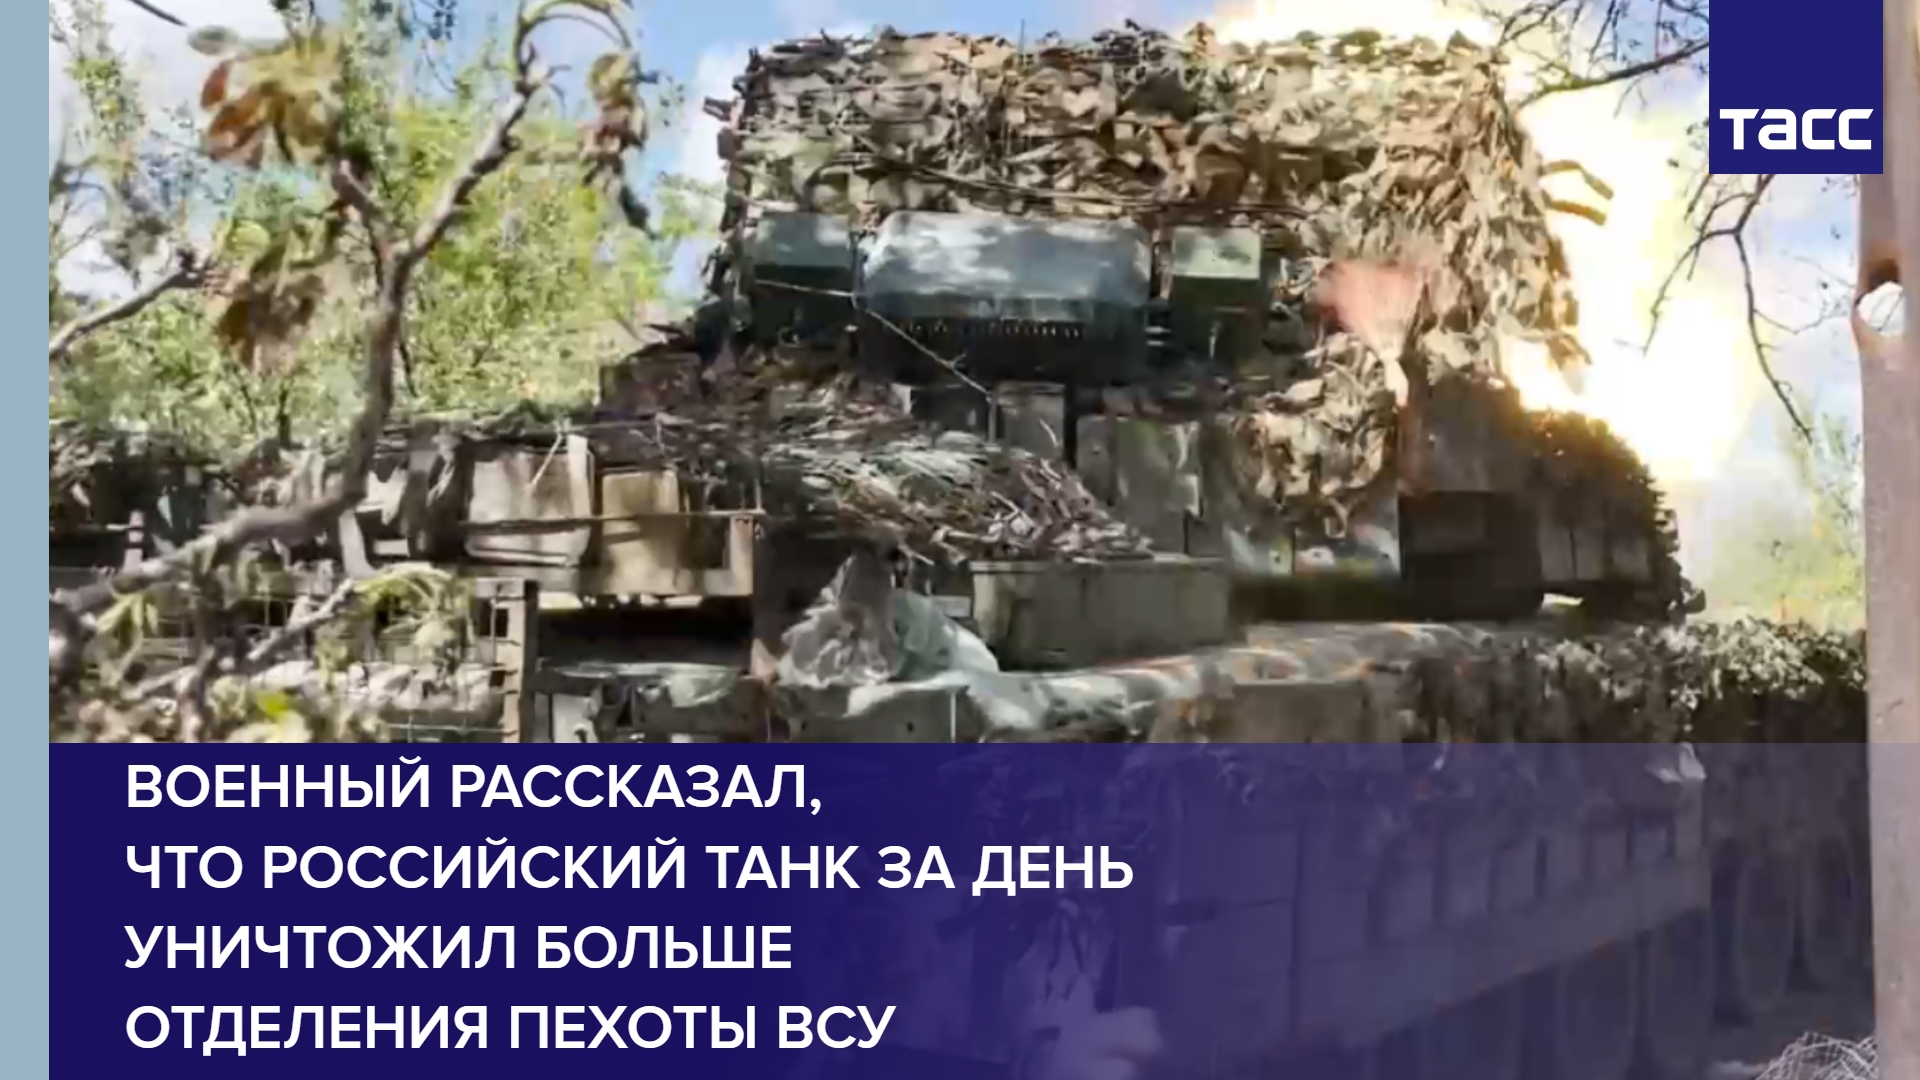 Военный рассказал, что российский танк за день уничтожил больше отделения пехоты ВСУ